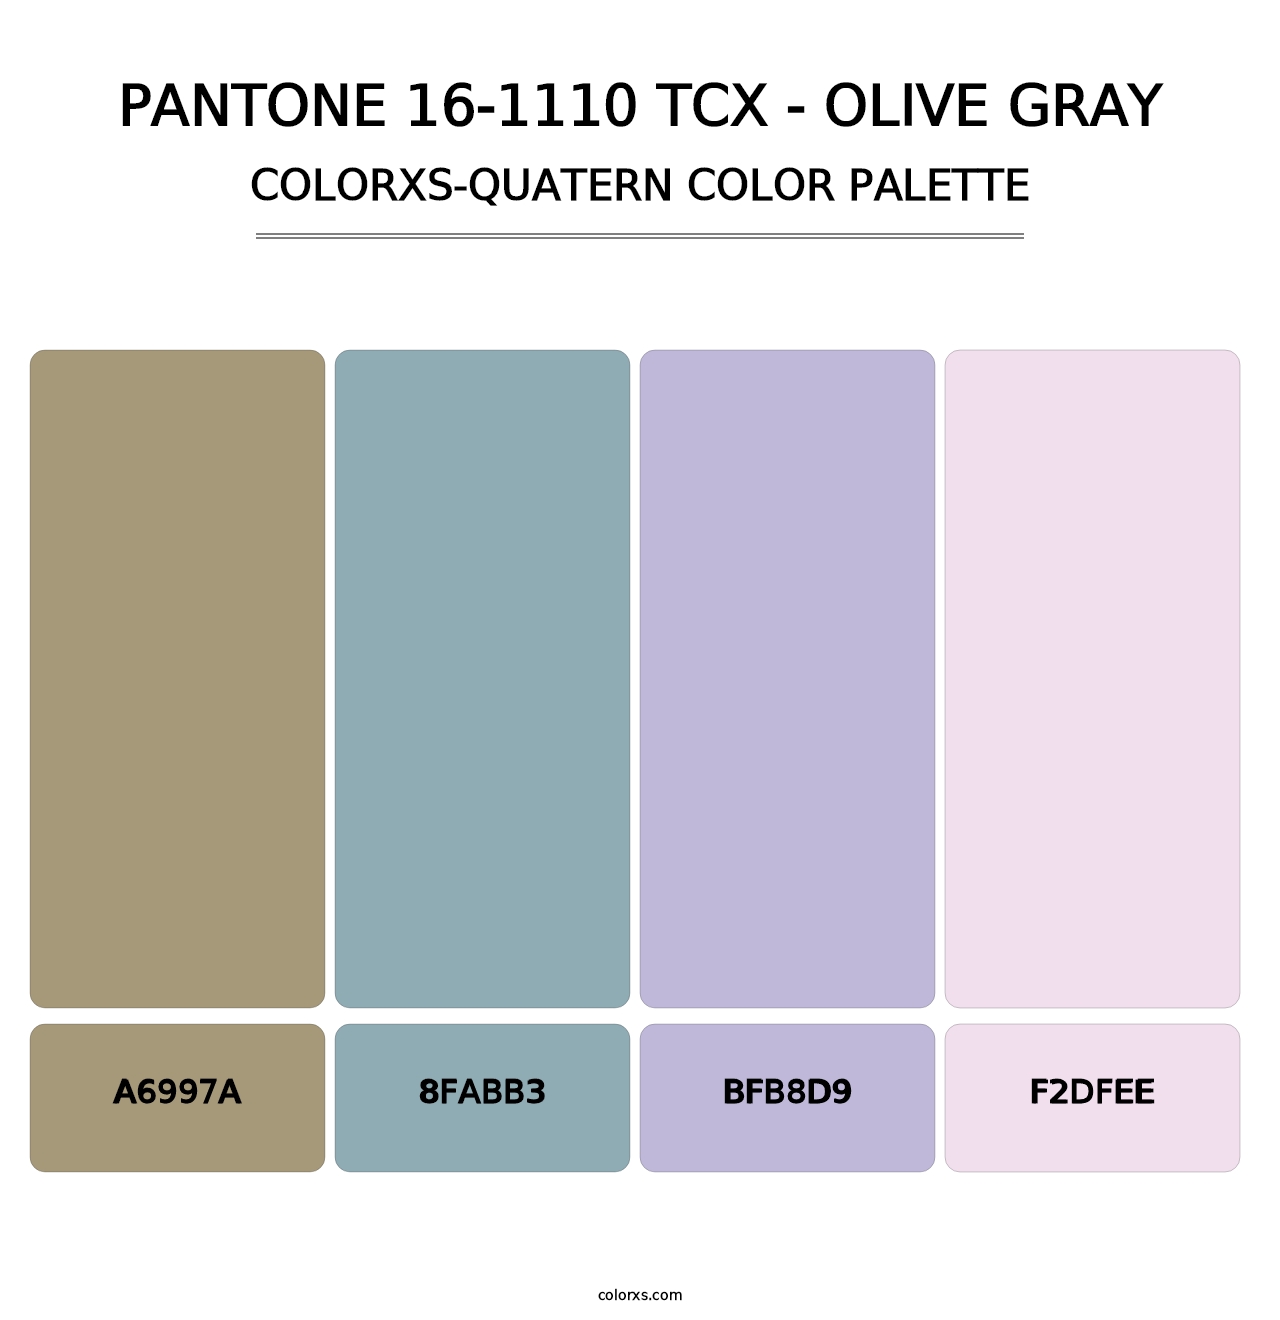 PANTONE 16-1110 TCX - Olive Gray - Colorxs Quatern Palette